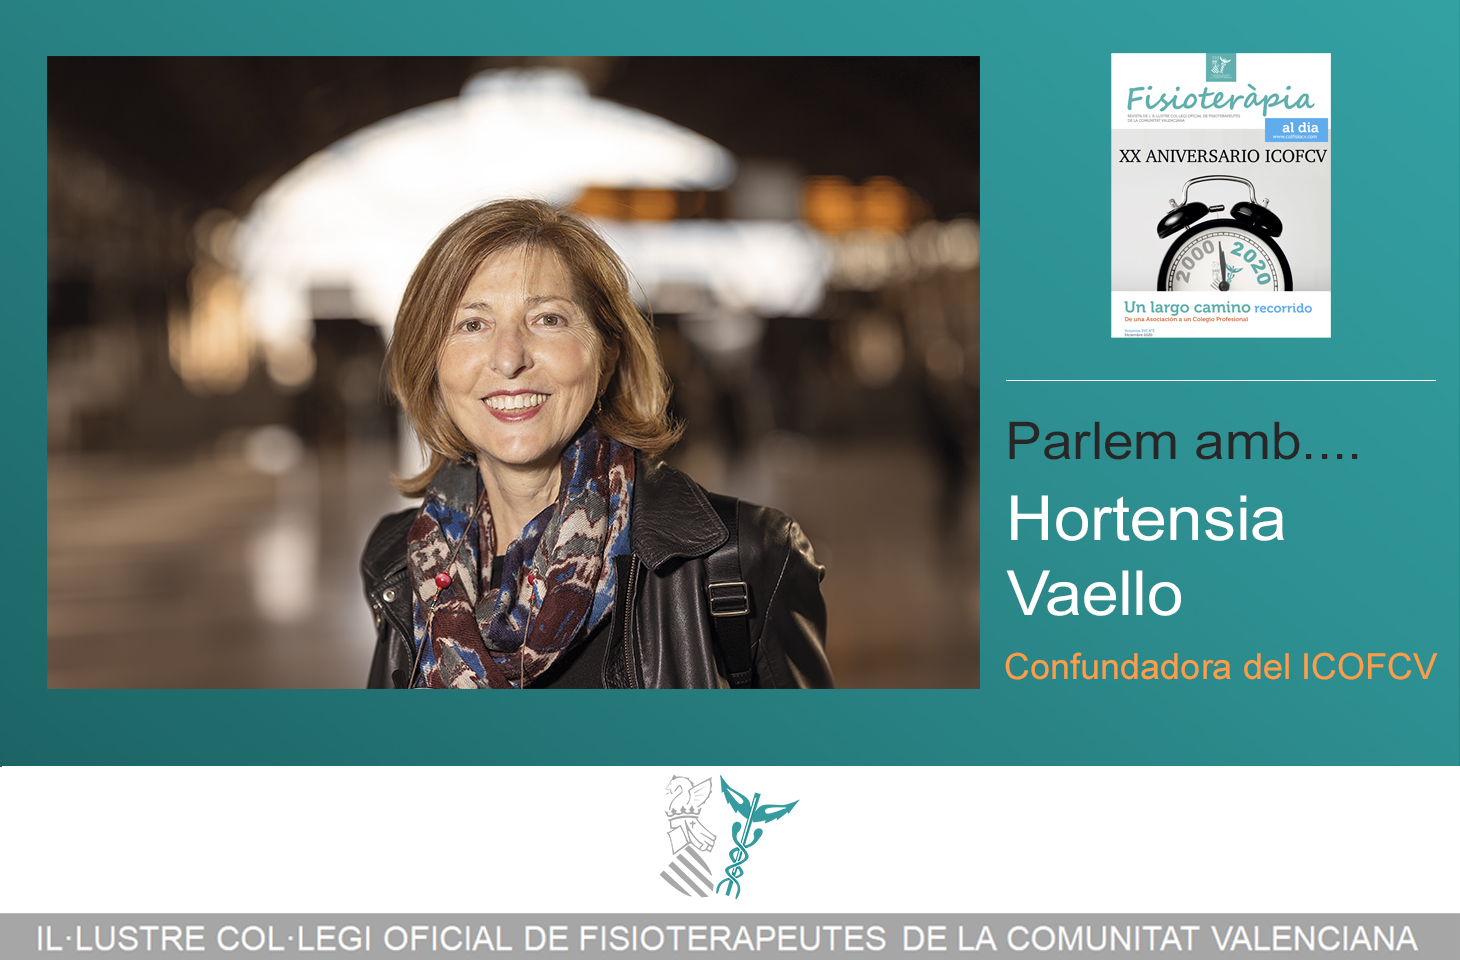 Parlem amb... Hortensia Vaello, confundadora del ICOFCV (monográfico XX Aniversario Colegio)